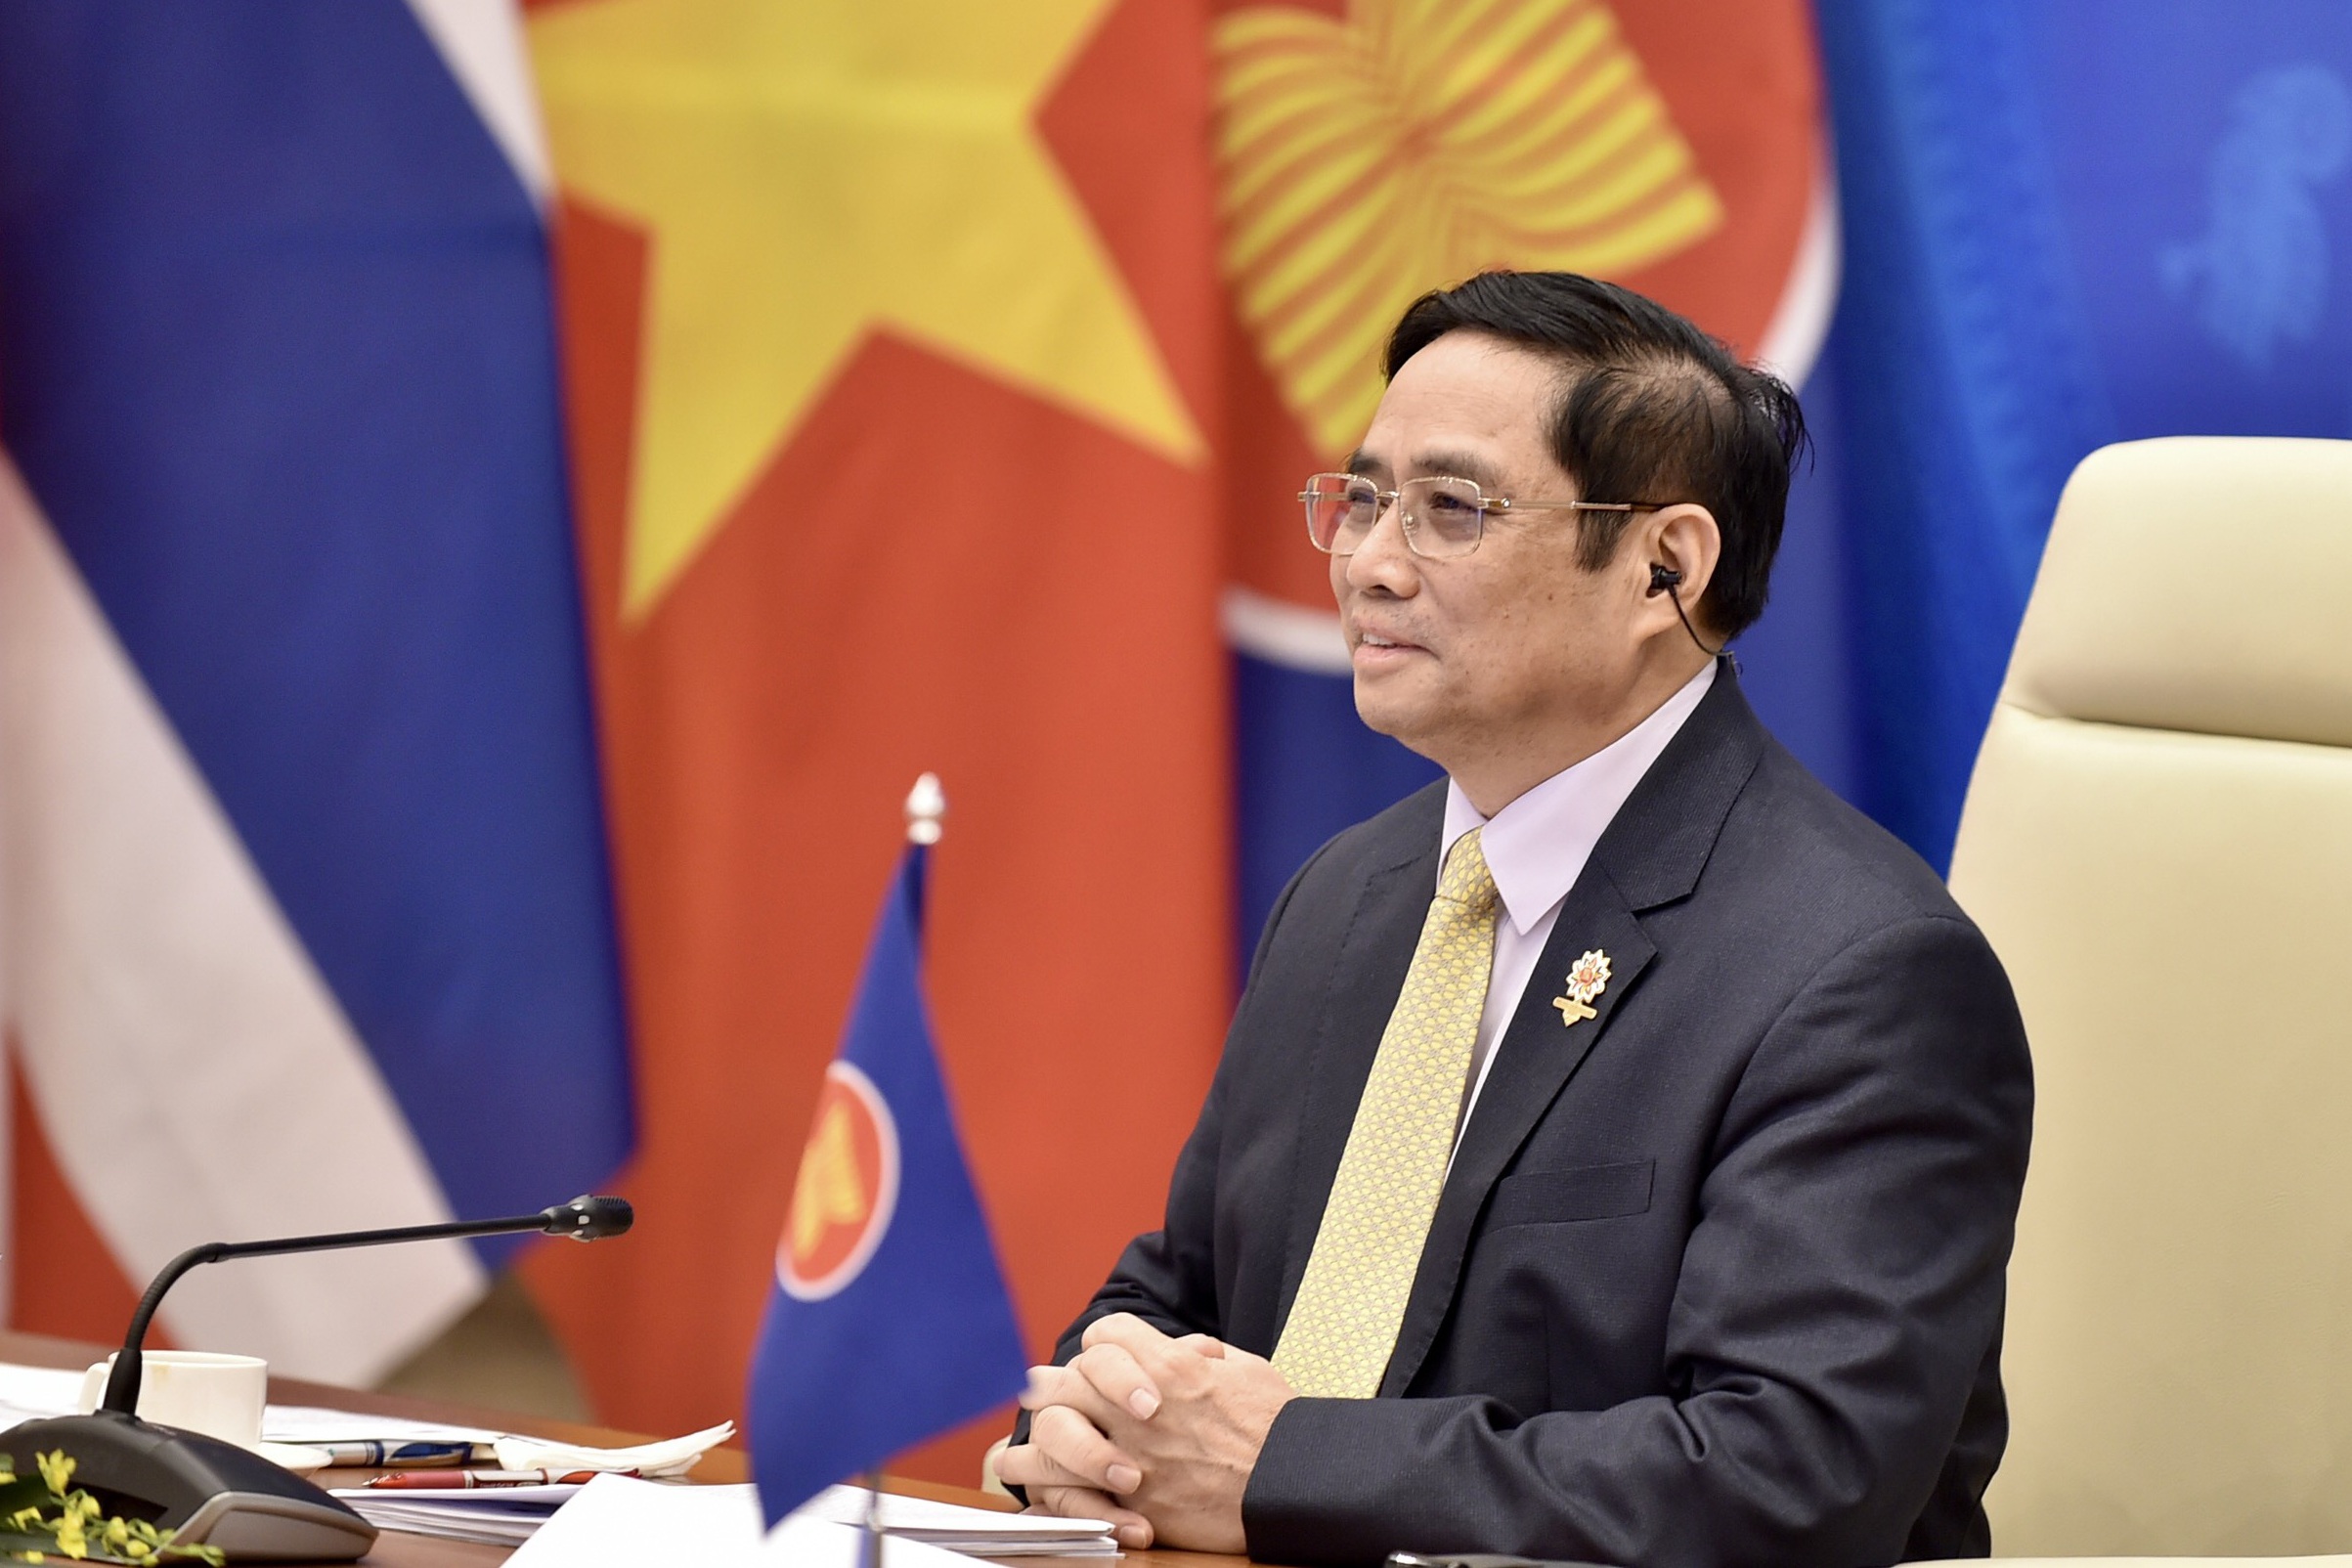 Thủ tướng đề nghị CDC Mỹ tại Hà Nội cảnh báo sớm tình huống y tế khẩn cấp - 1